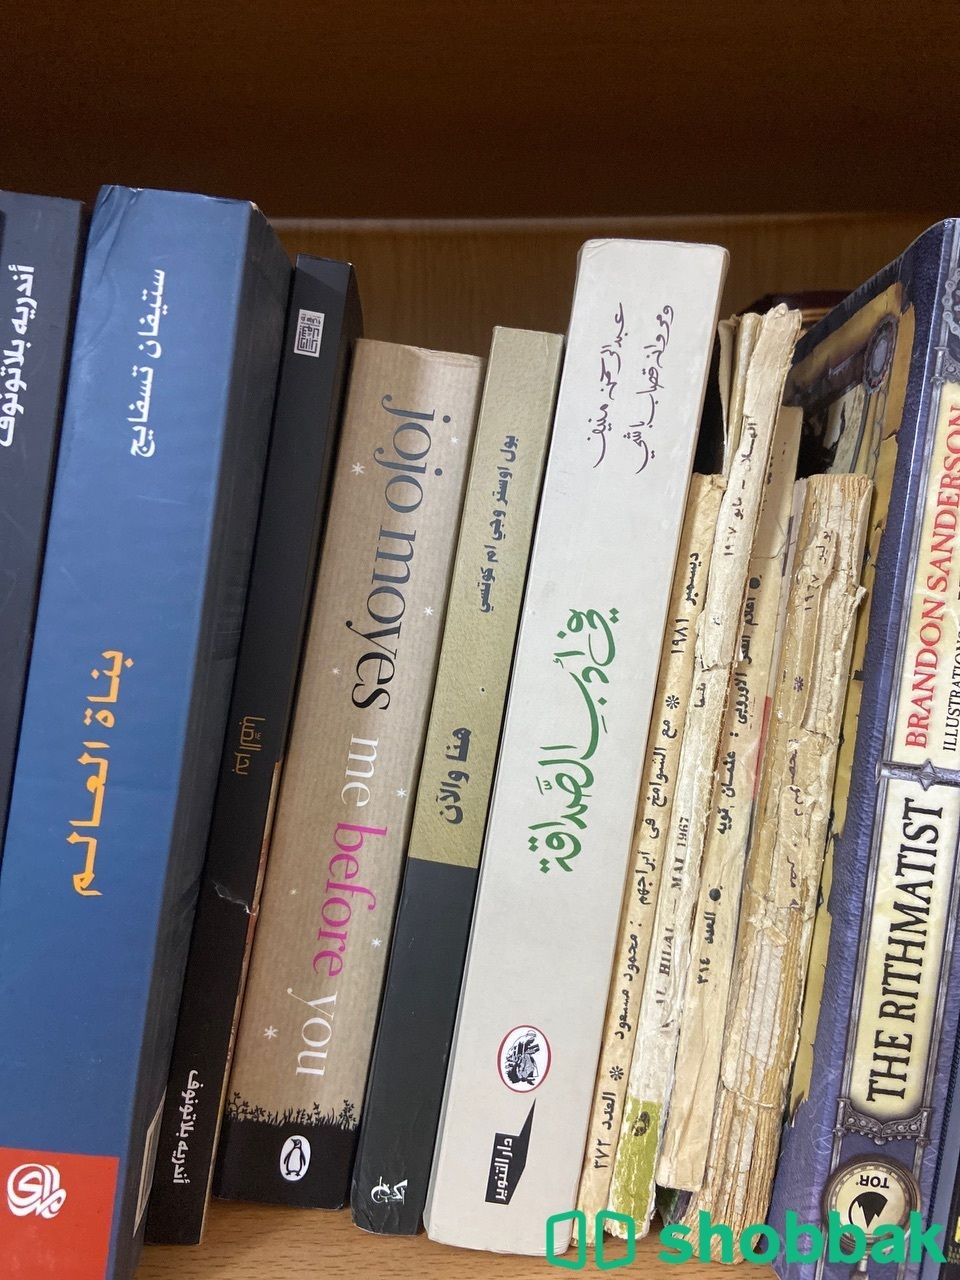 مجموعة كتب جديدة وقيمة وتراثية  Shobbak Saudi Arabia